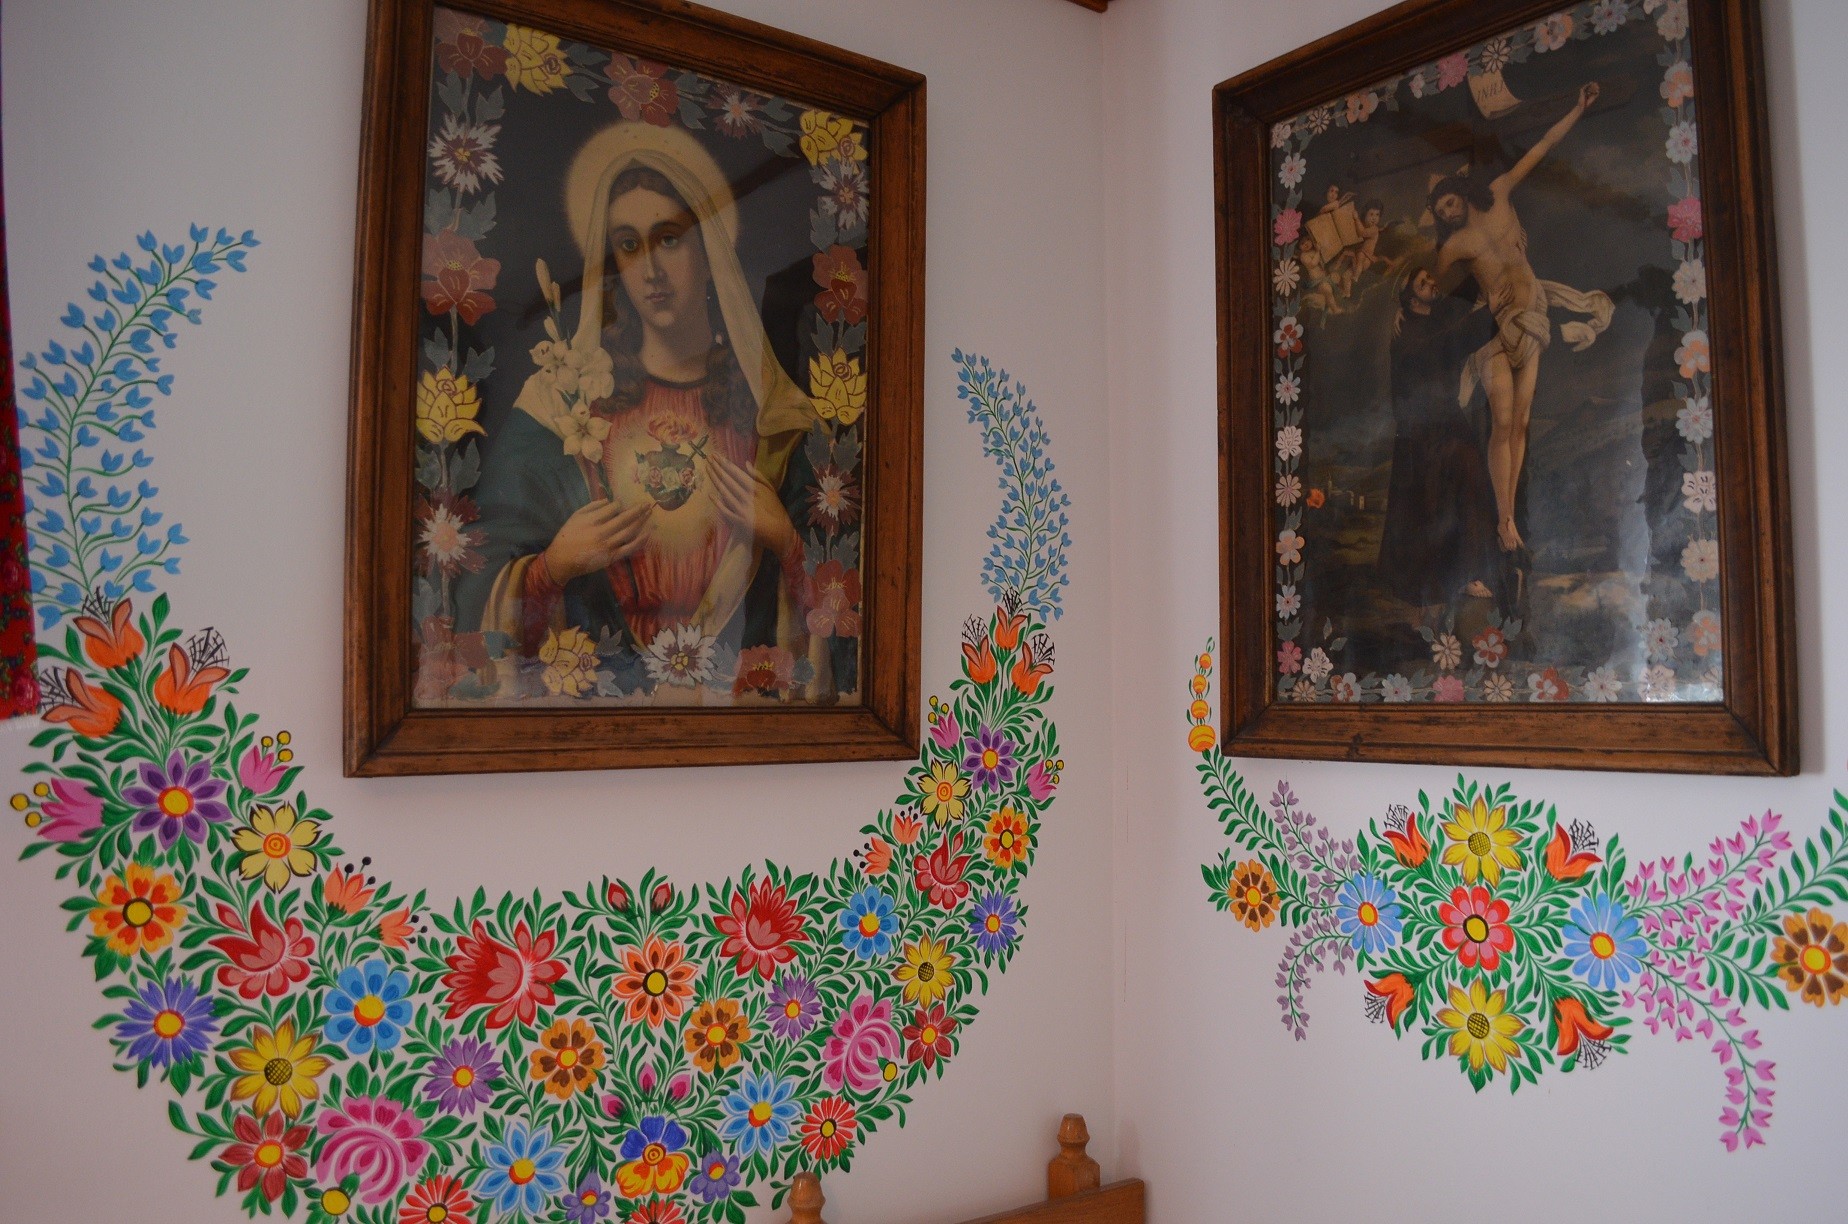 wnętrze domu, obrazy święte na ścianach otoczone kwiatowymi malunkami